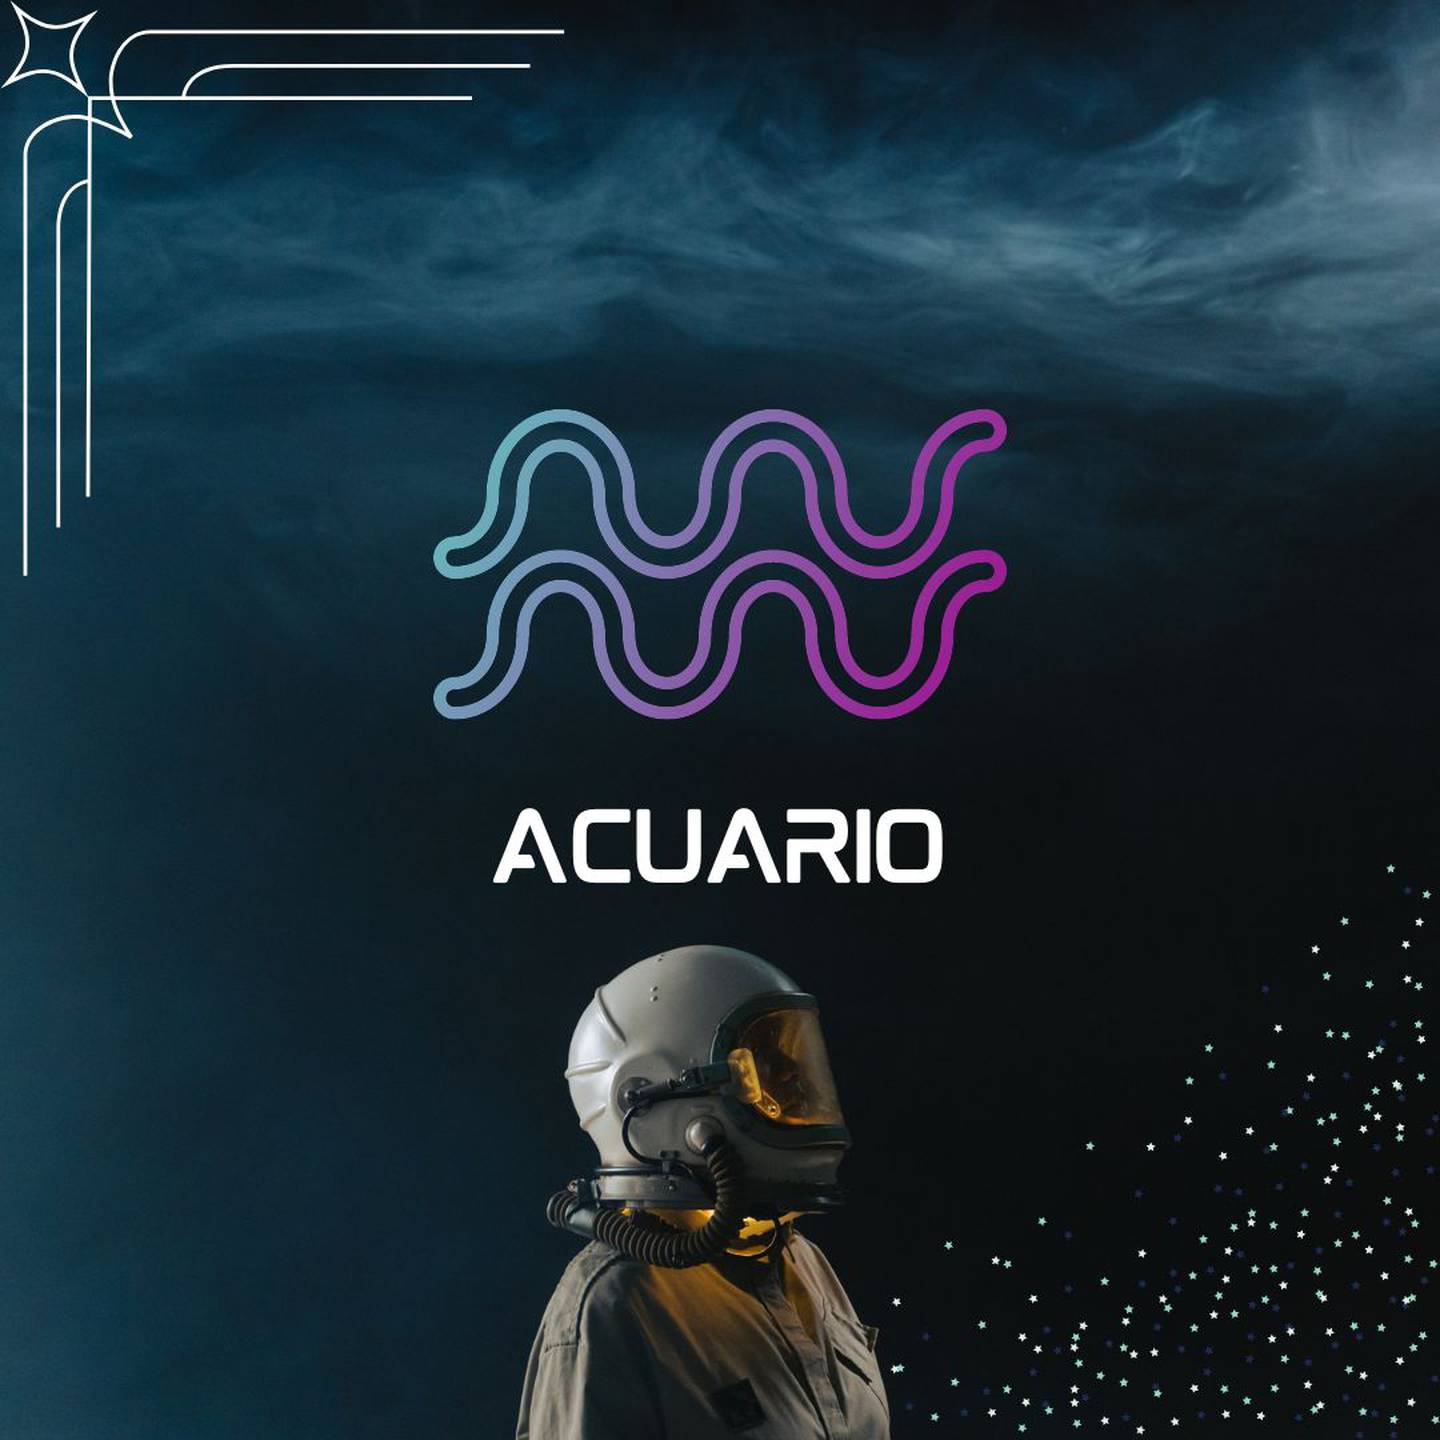 Sobre un fondo oscuro, con humo en la parte superior, aparece el símbolo de Acuario. Al centro aparece el nombre del signo en color blanco y todavía más abajo, un astronauta está mirando hacia la derecha.